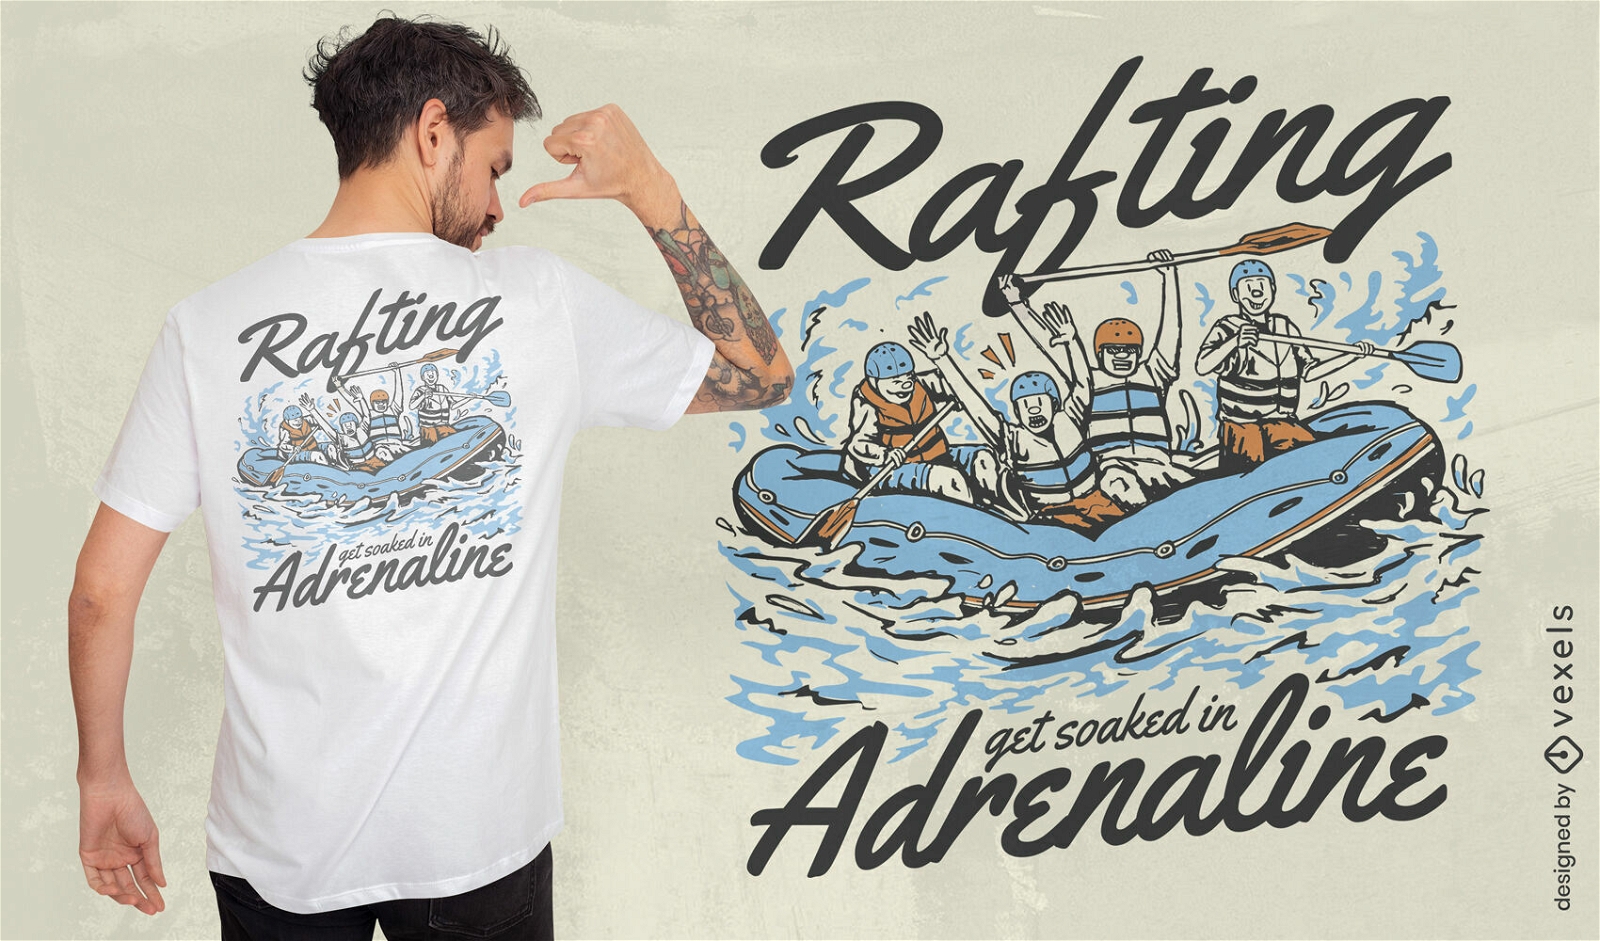 Dise?o de camiseta de adrenalina de rafting.